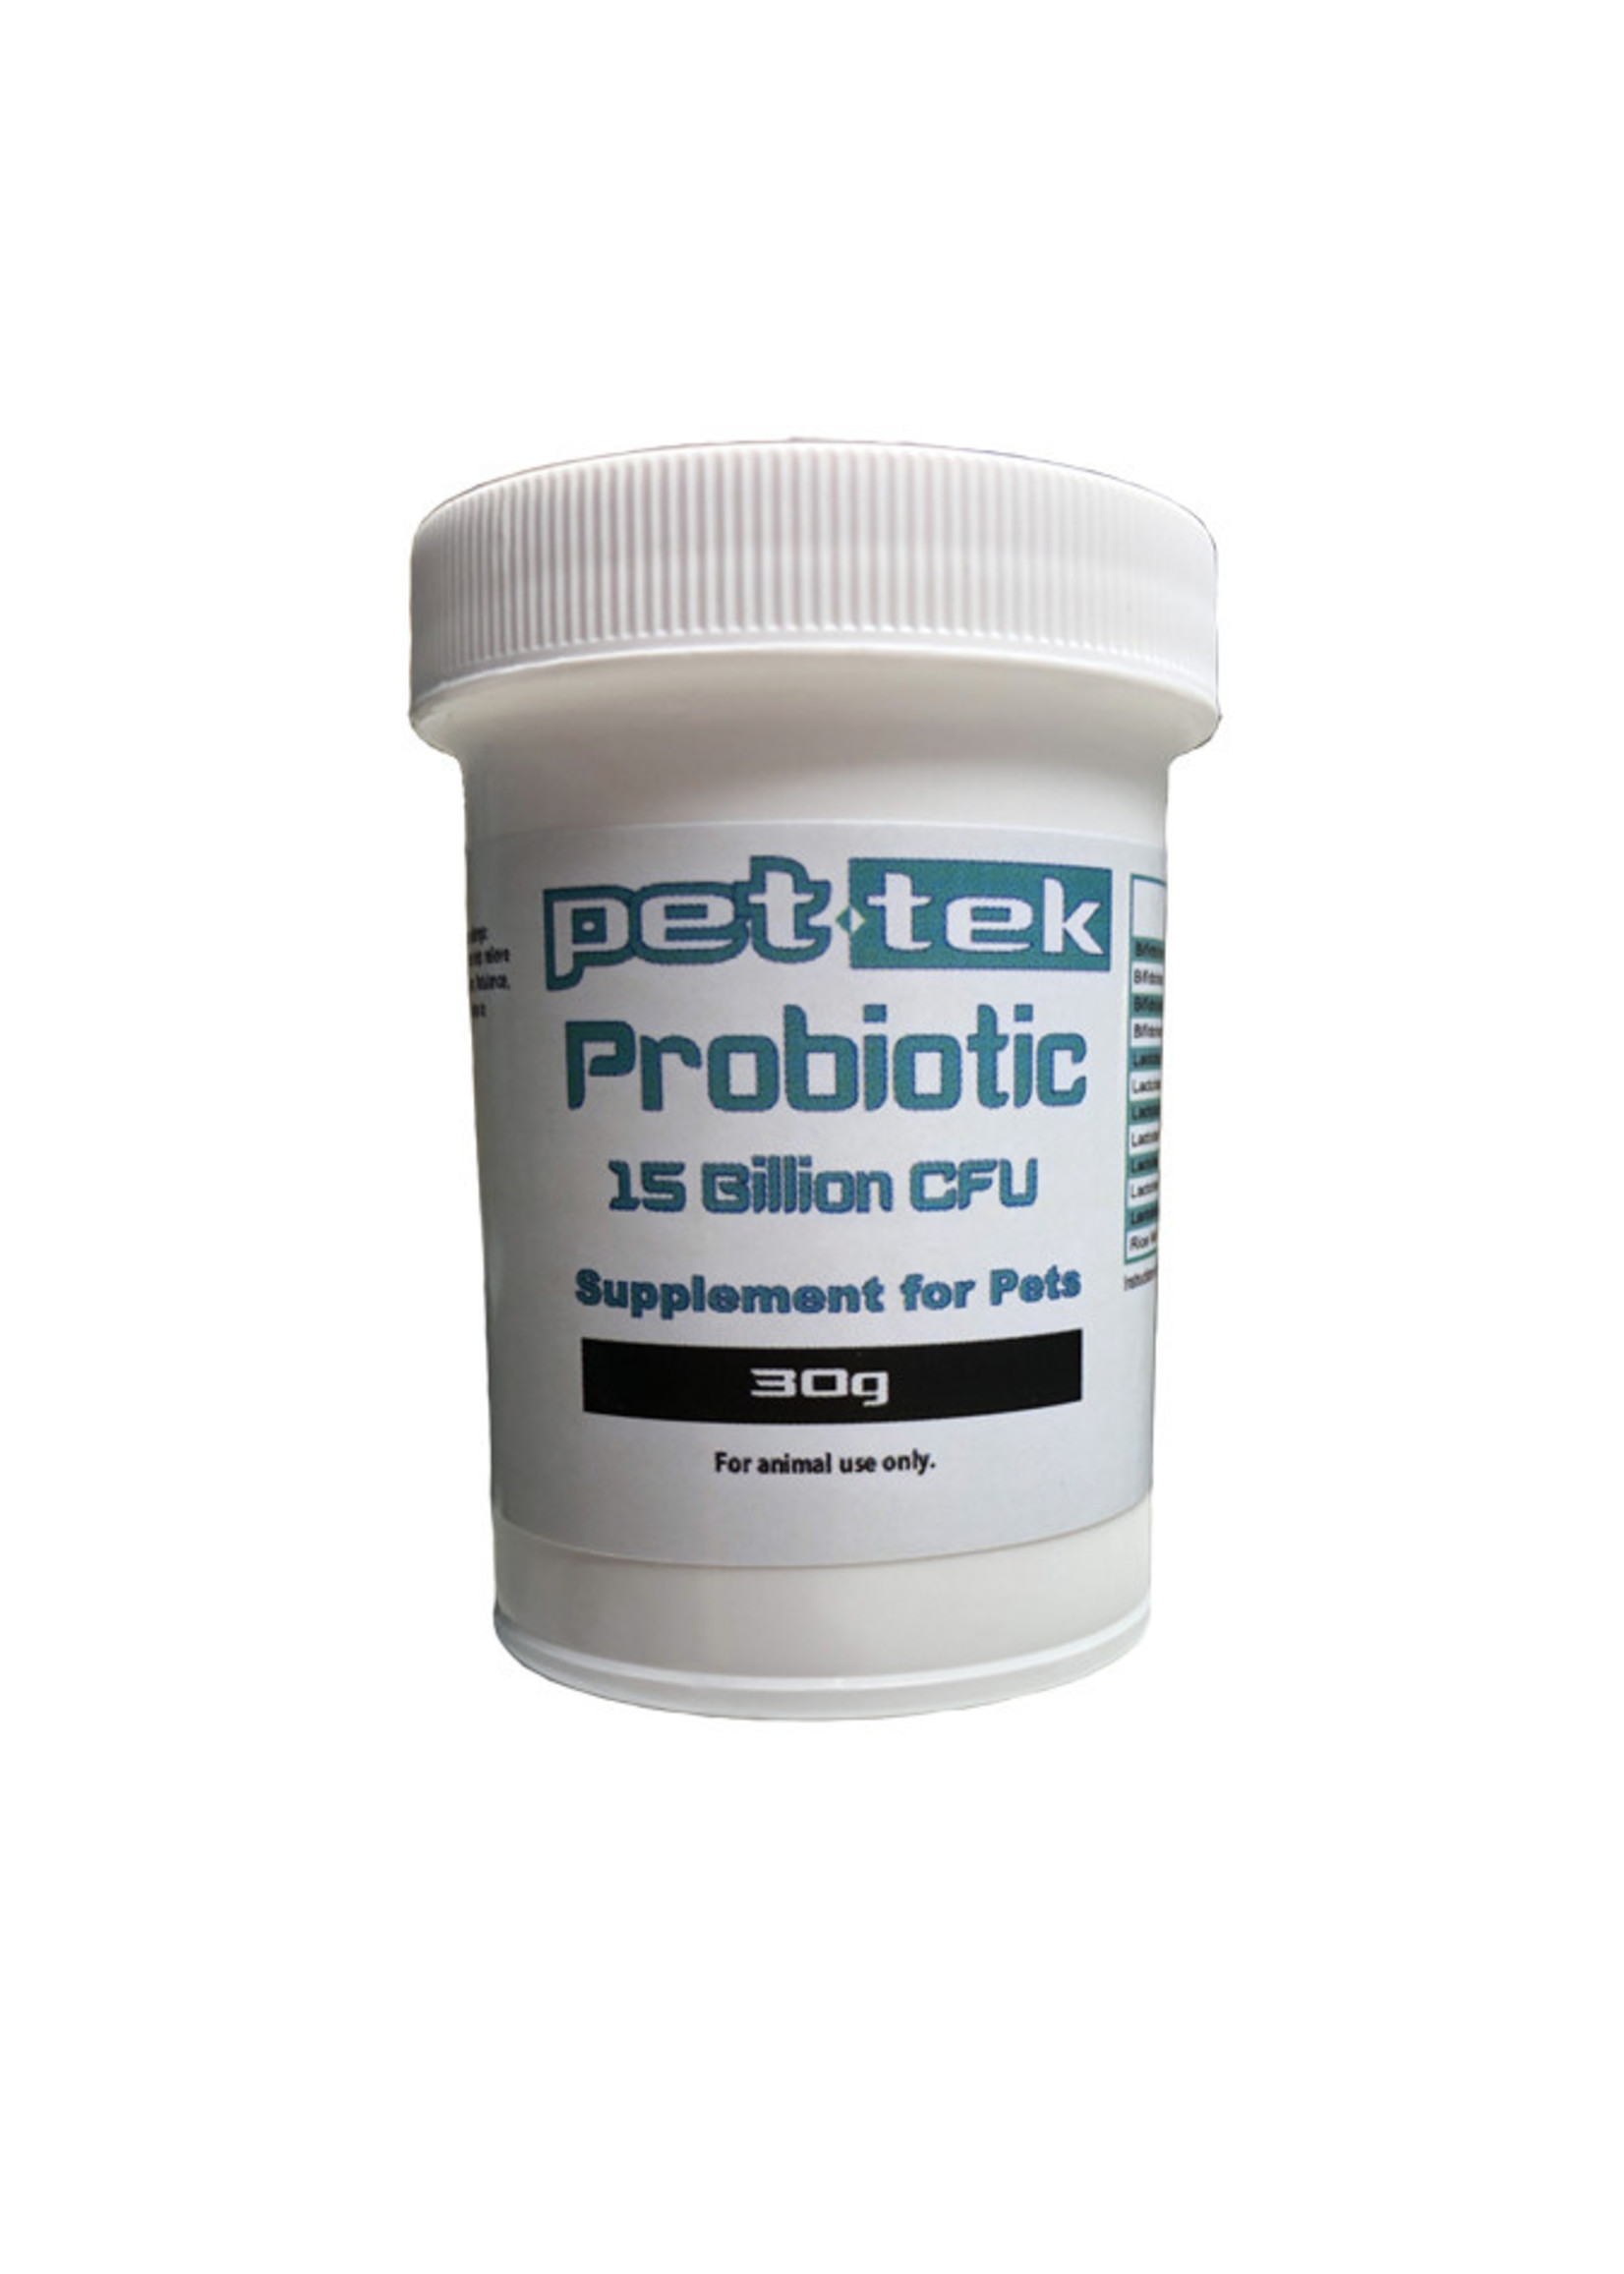 Pet-Tek Pet-Tek Probiotic 15B